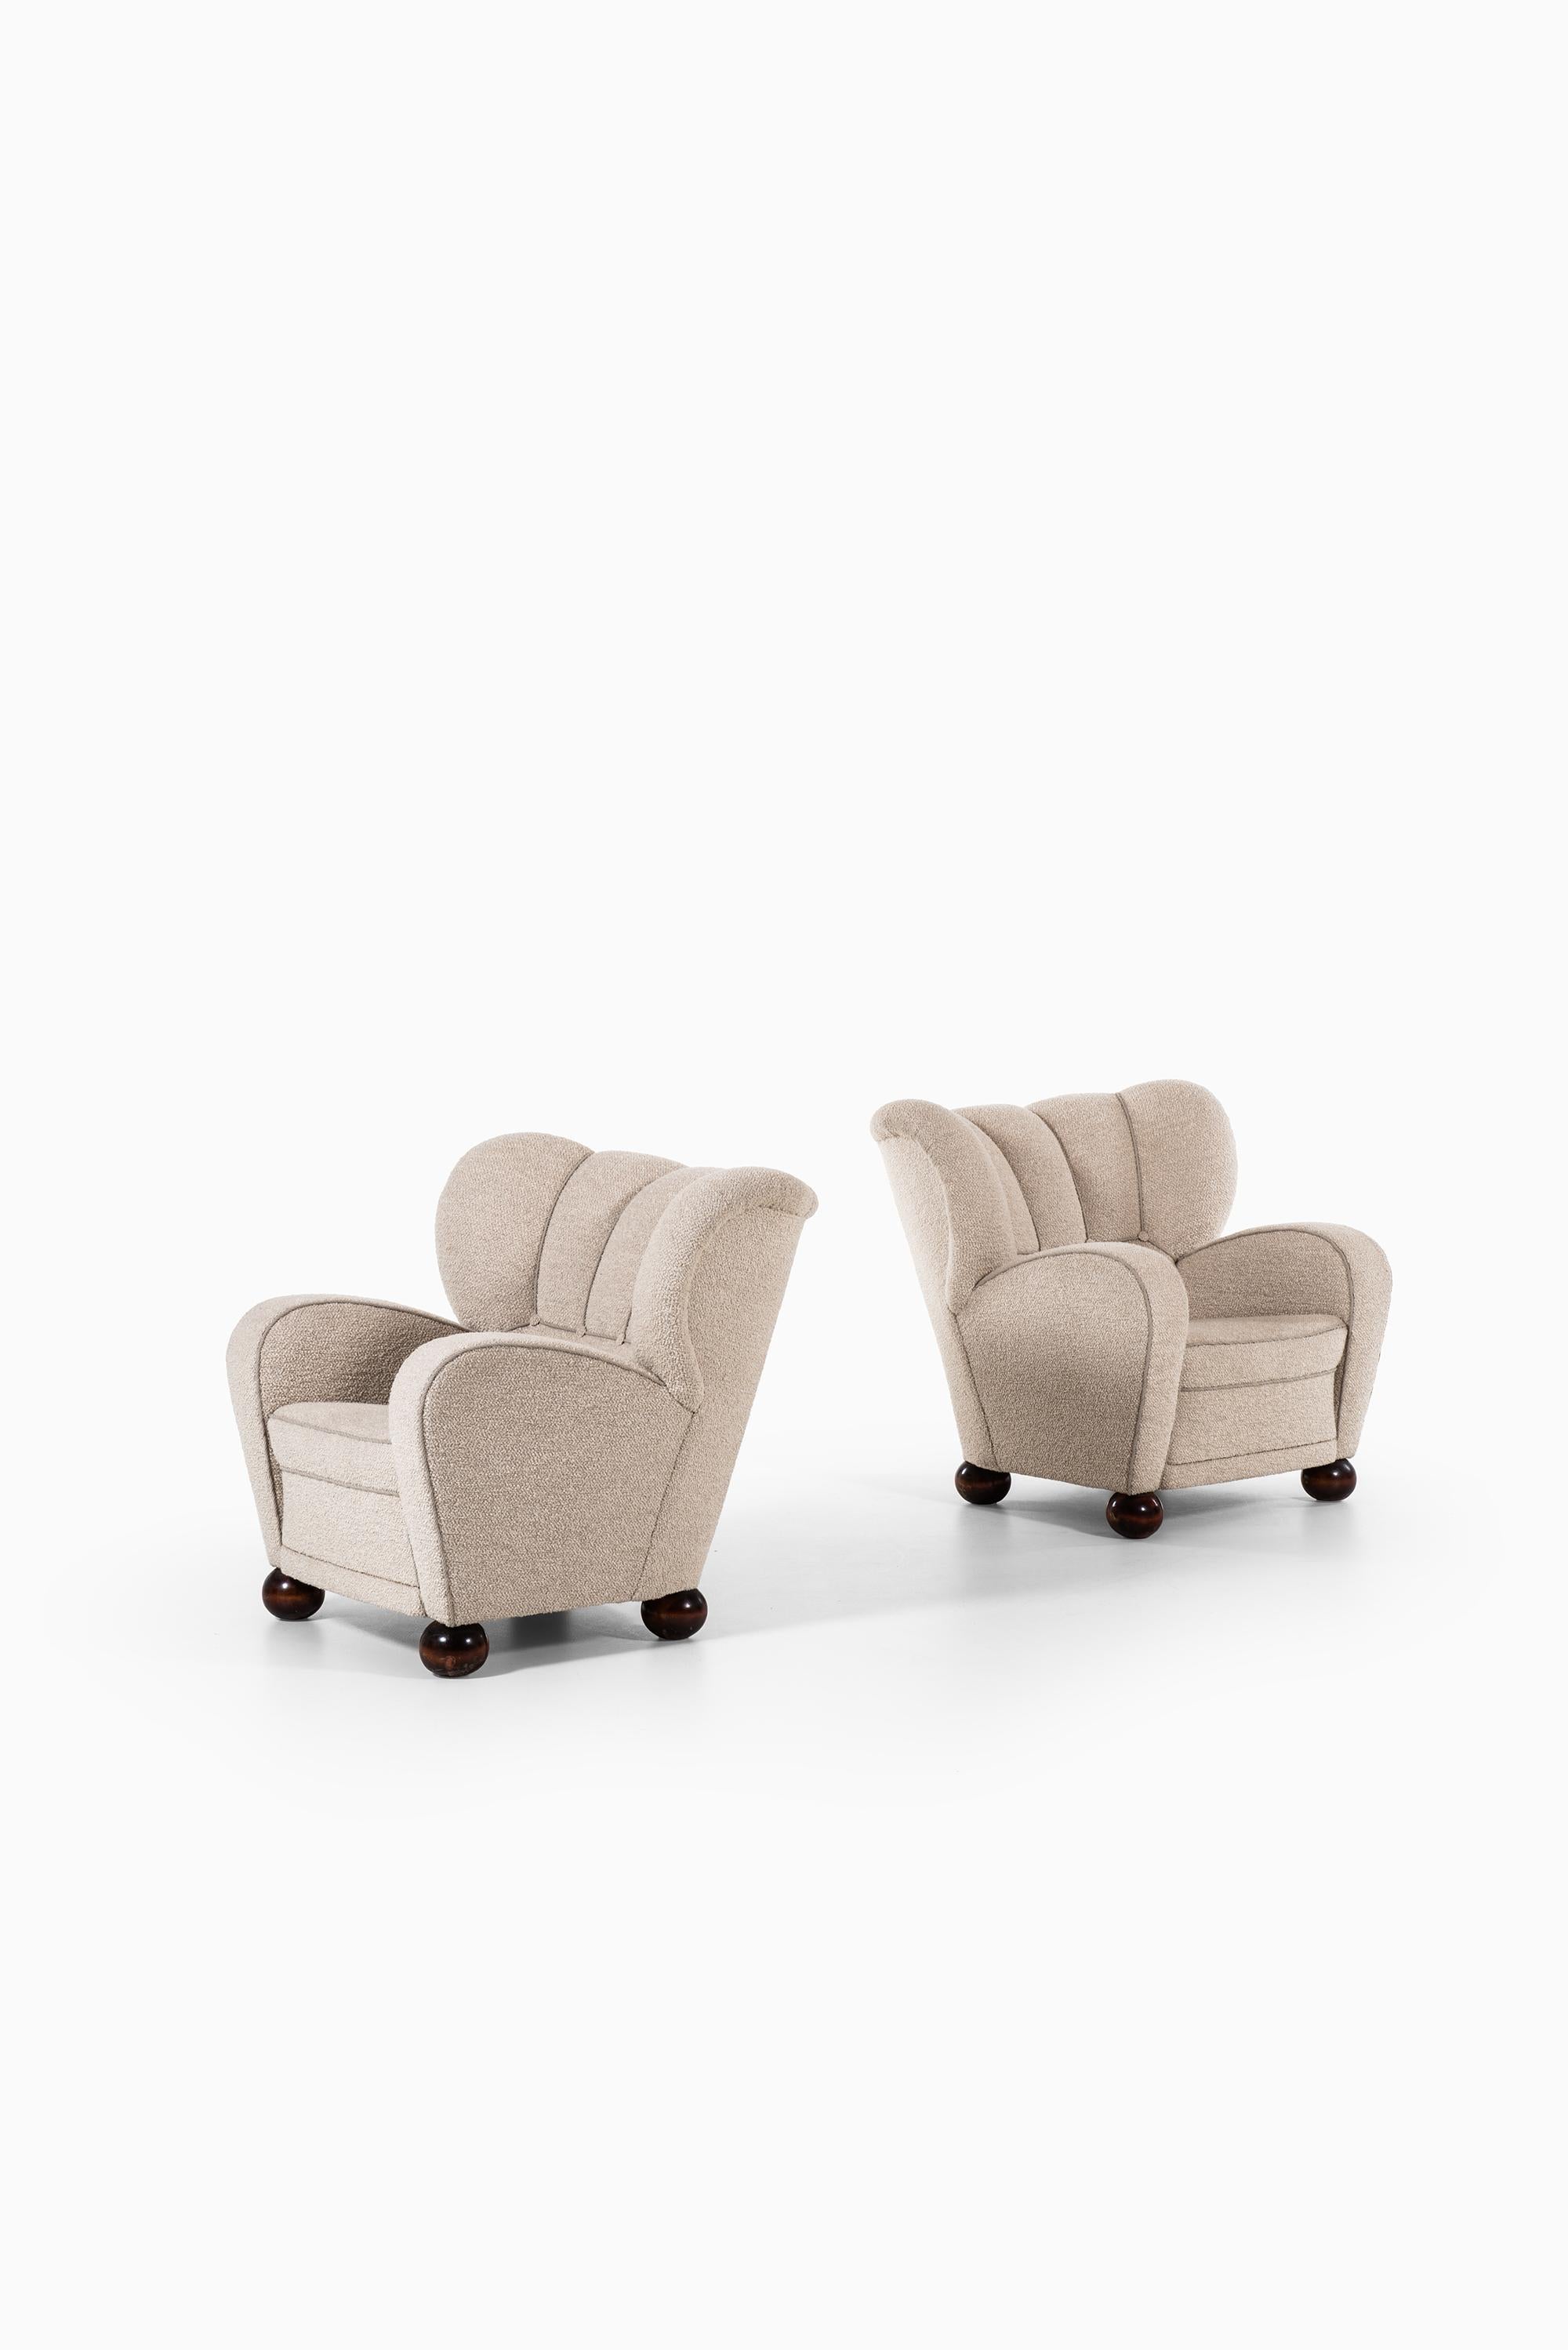 Très rare paire de fauteuils modèle Aulanko de Märta Blomstedt. Produit par Häämenlinna en Finlande. Conçu en 1939 pour le salon de l'hôtel Aulanko.